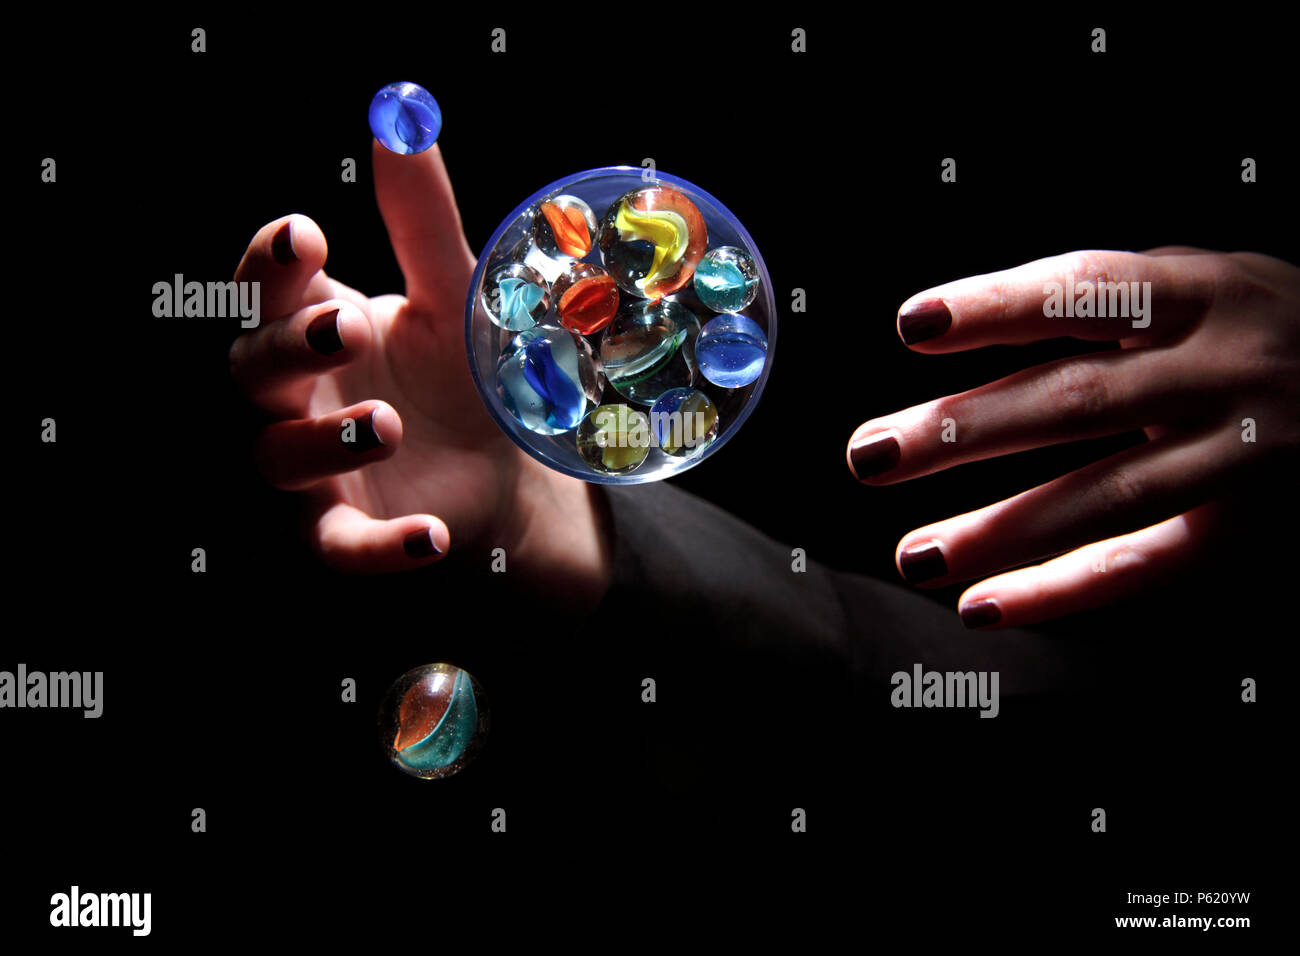 Une paire de mains contrôler une bille en verre sphère qui ressemble à la terre avec de petites lunes. Banque D'Images